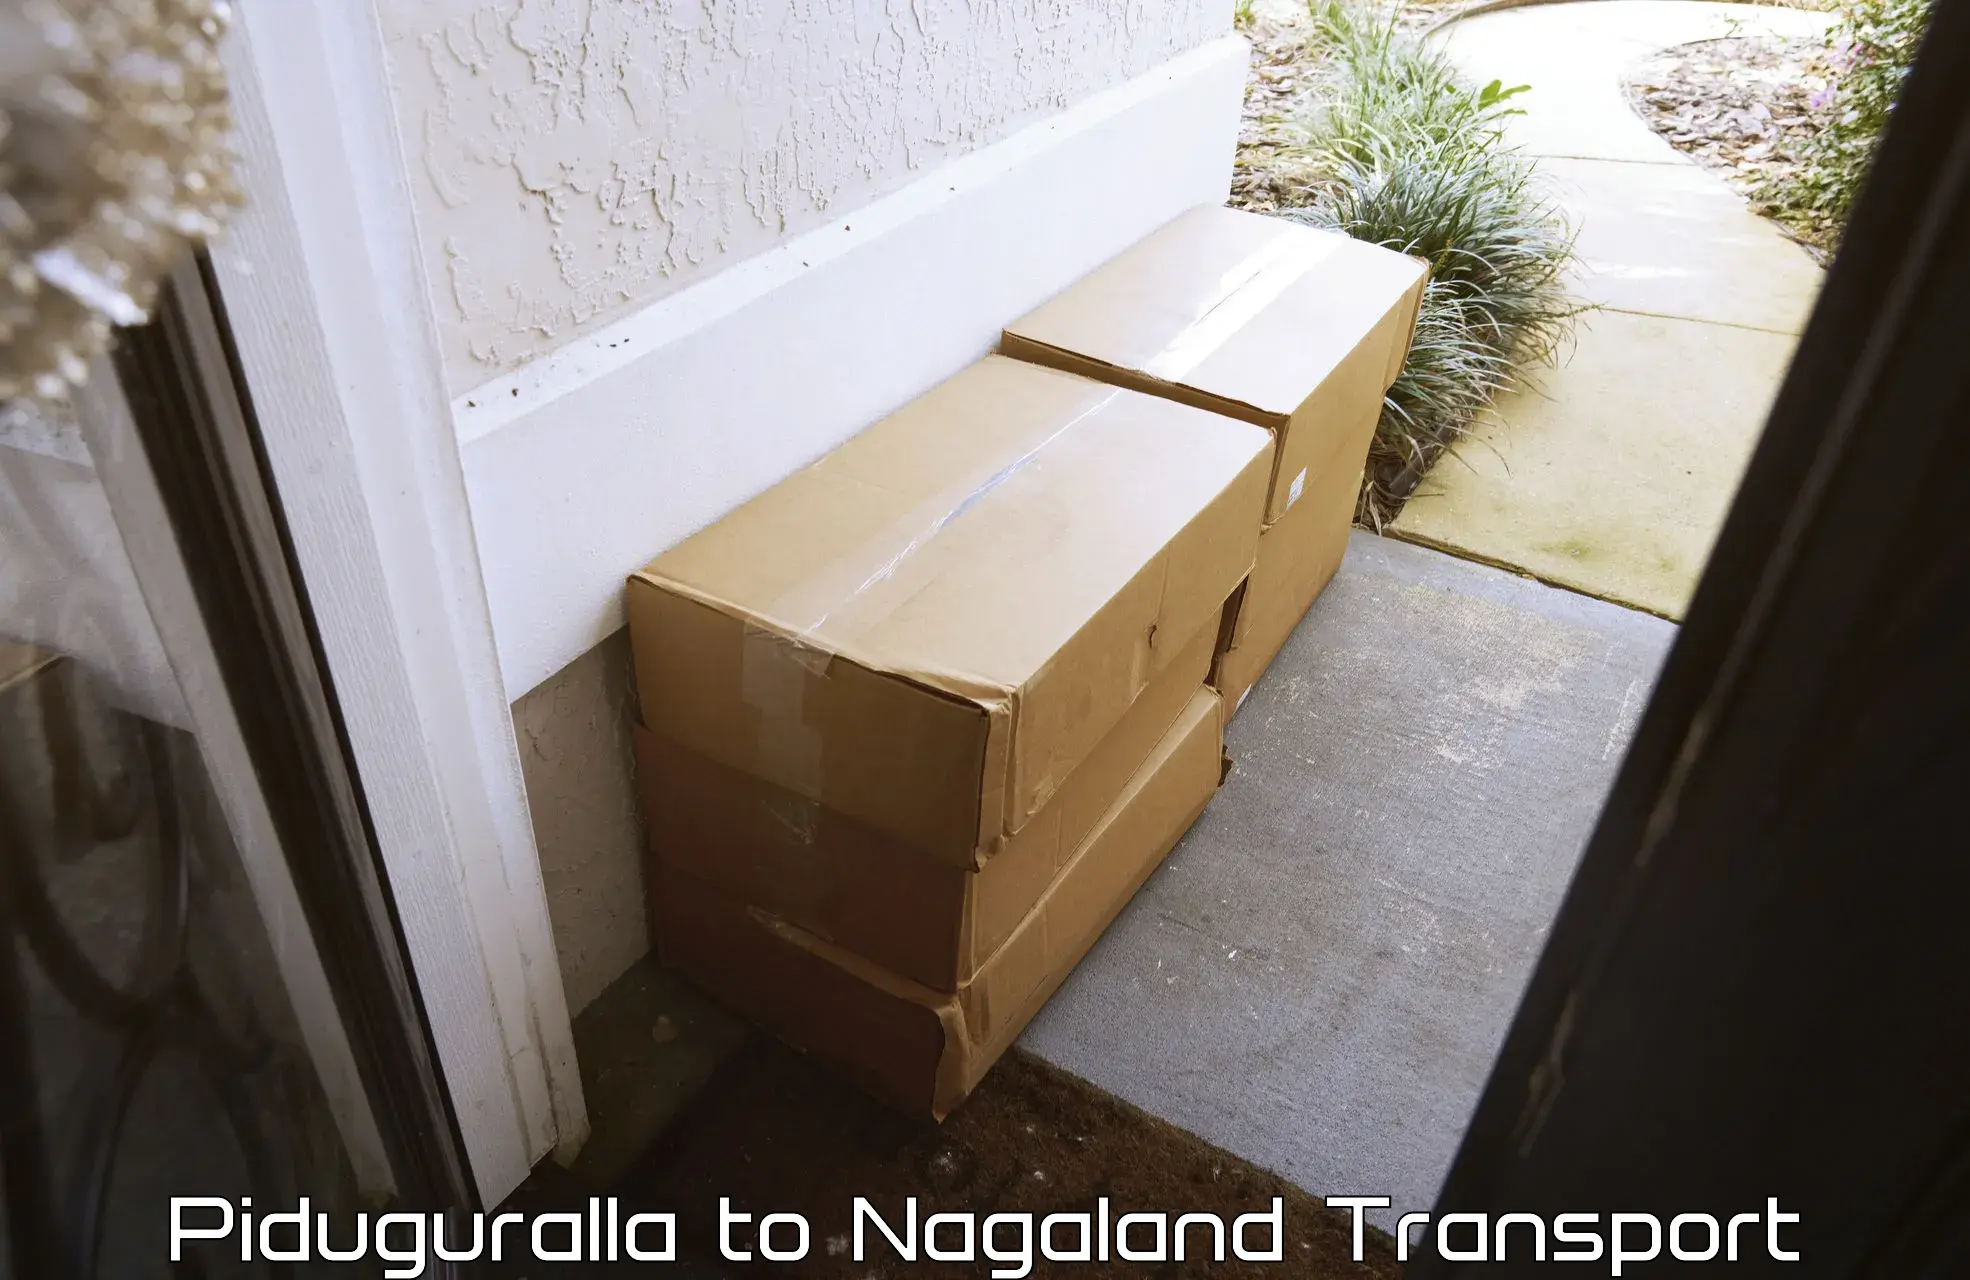 Furniture transport service Piduguralla to Wokha